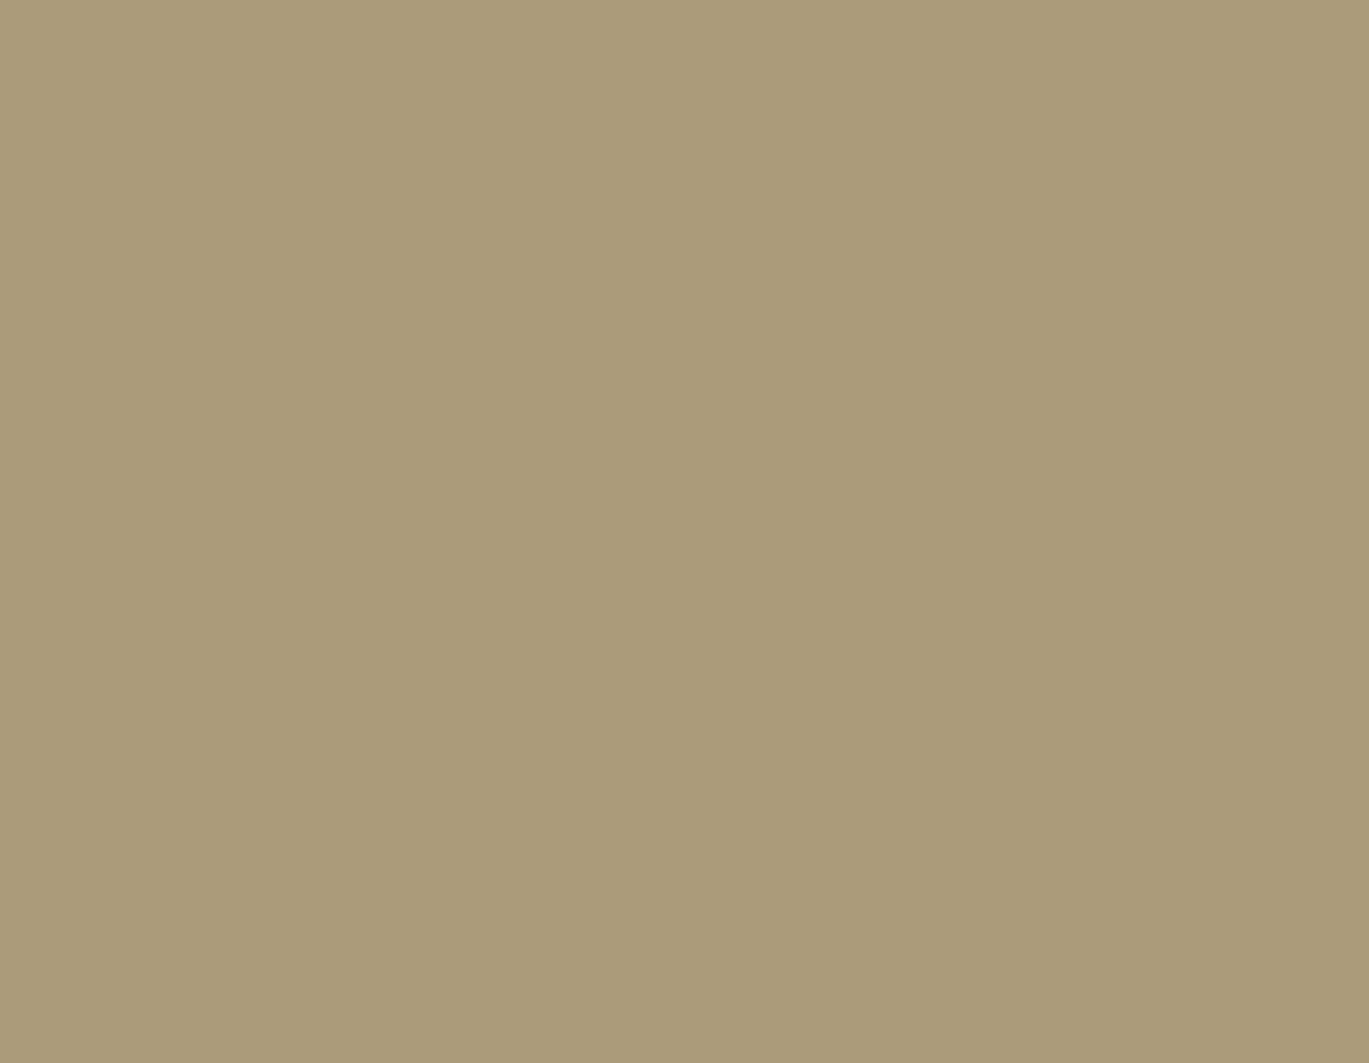 Василий Кандинский. Первая абстрактная акварель. 1910. Национальный музей современного искусства, Центр Жоржа Помпиду, Париж